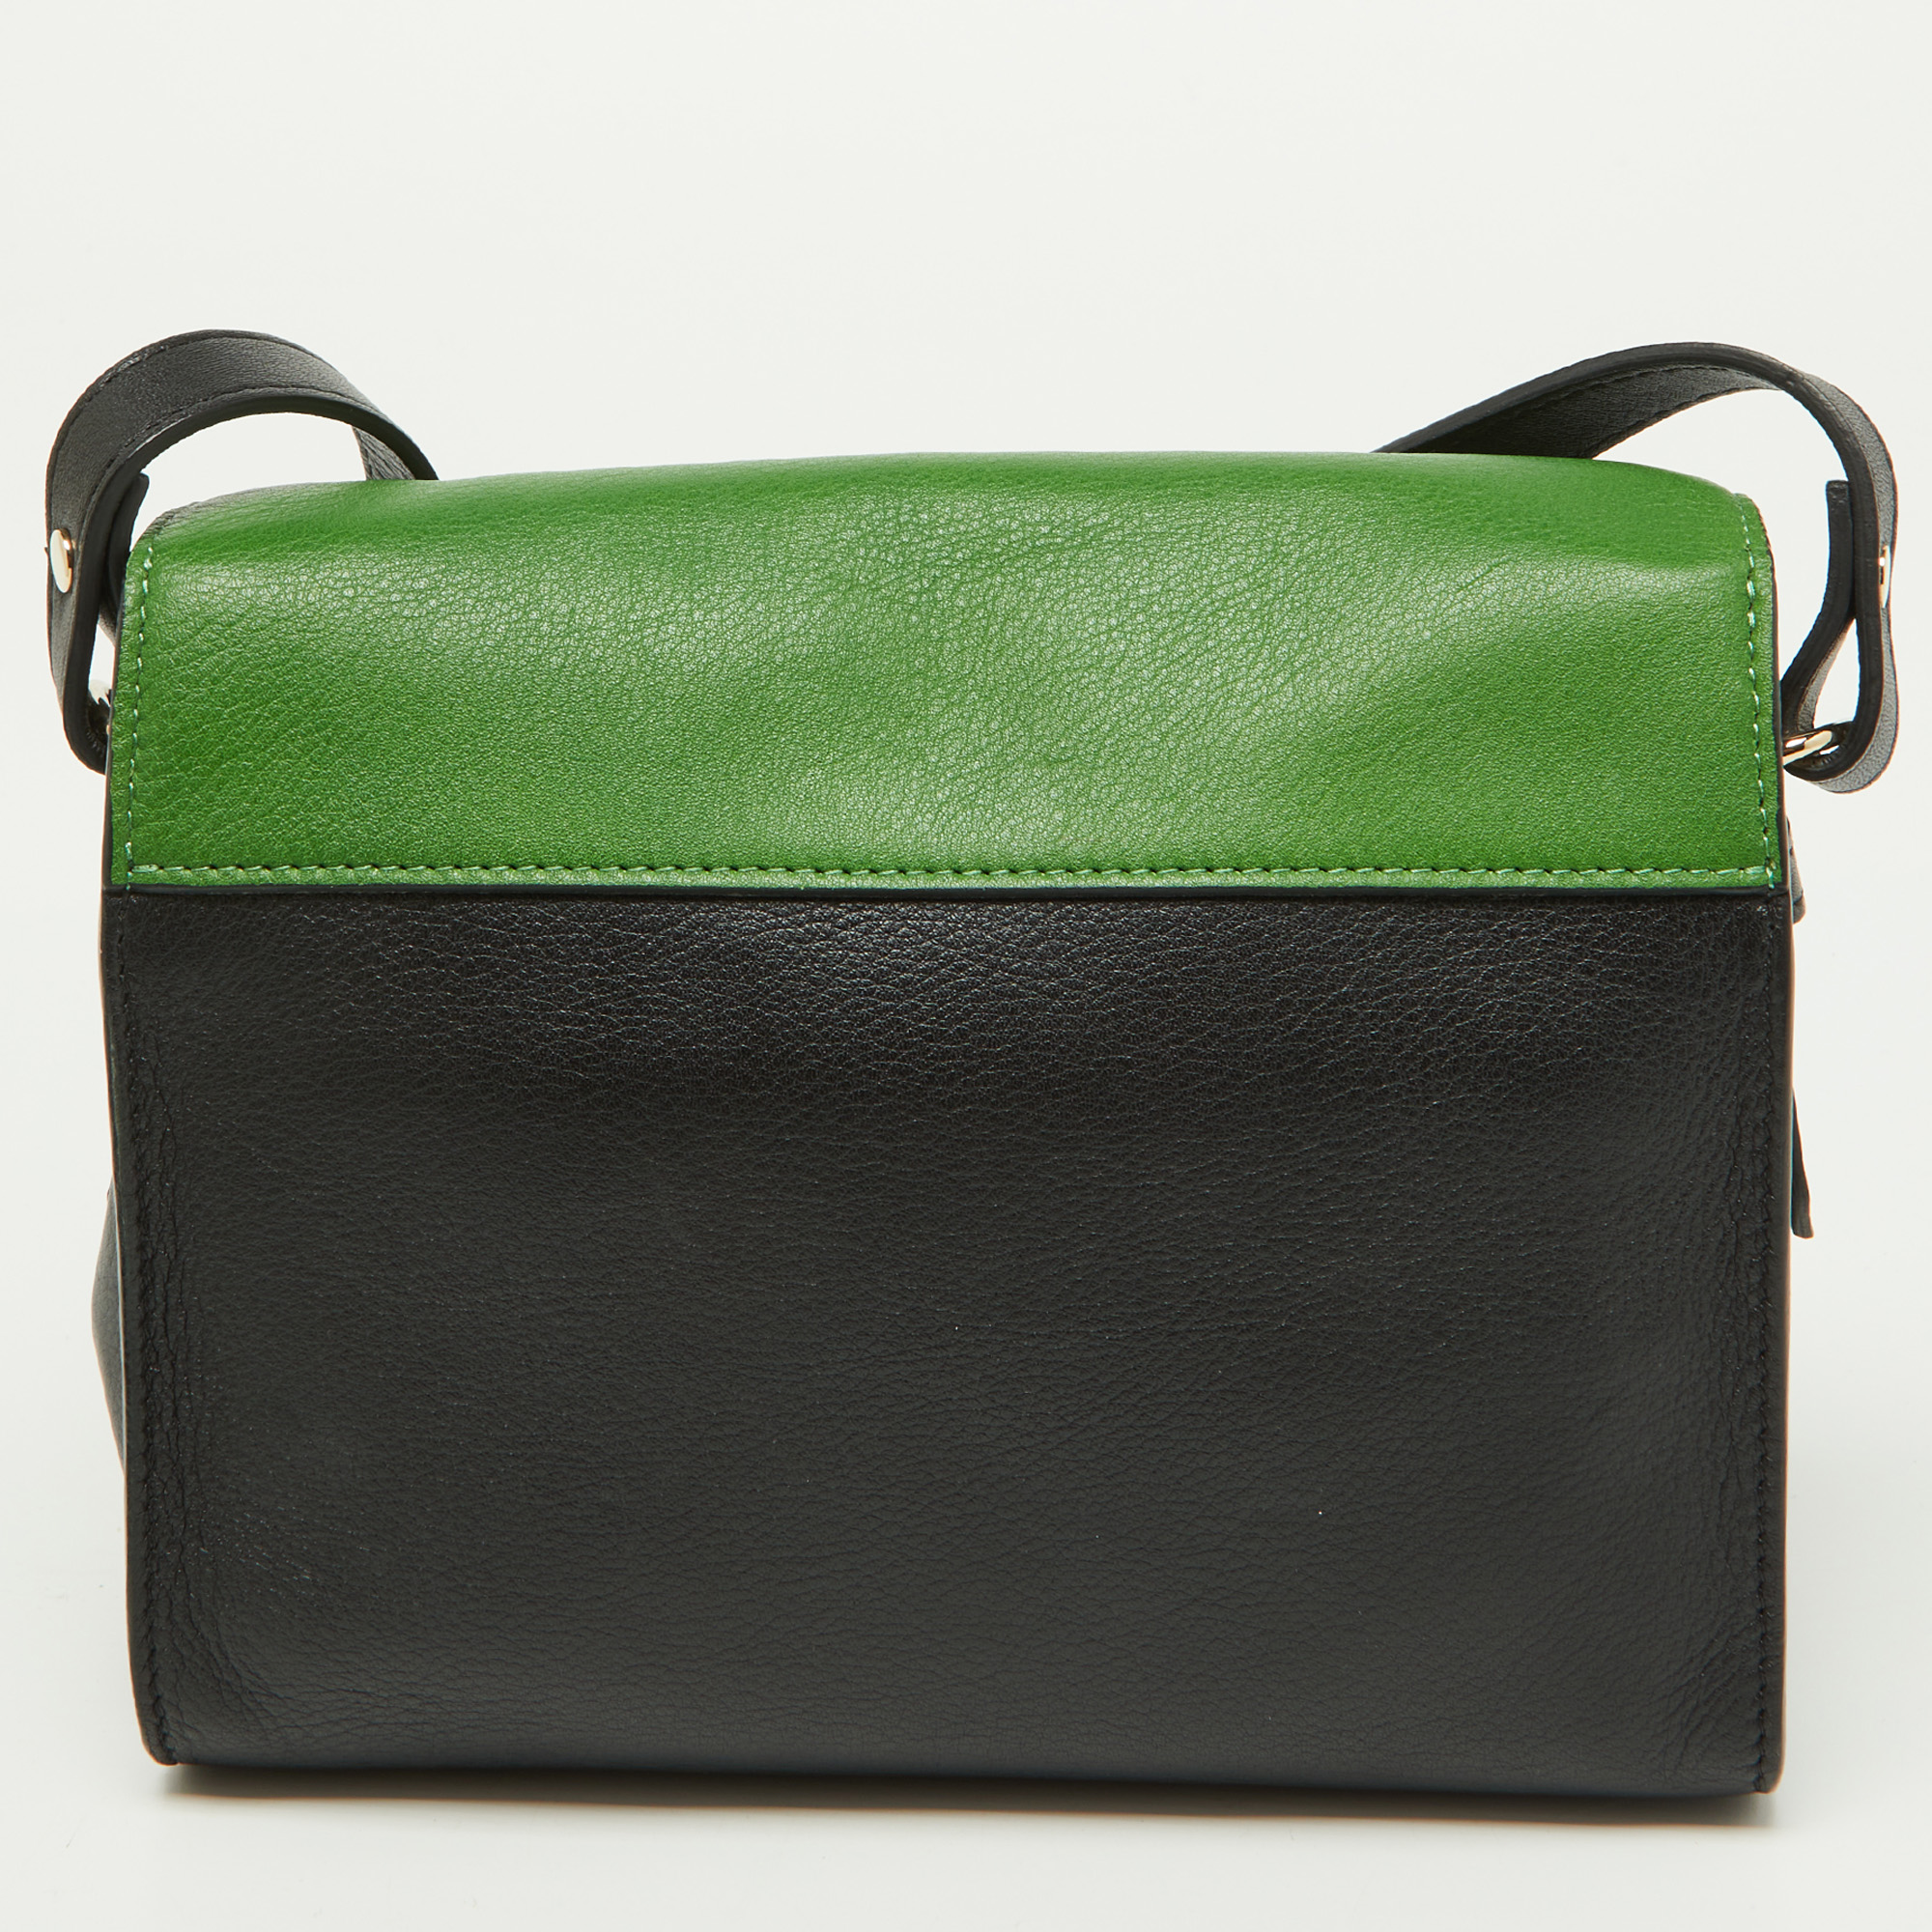 Lanvin Tricolor Leather Sac De Ville Crossbody Bag